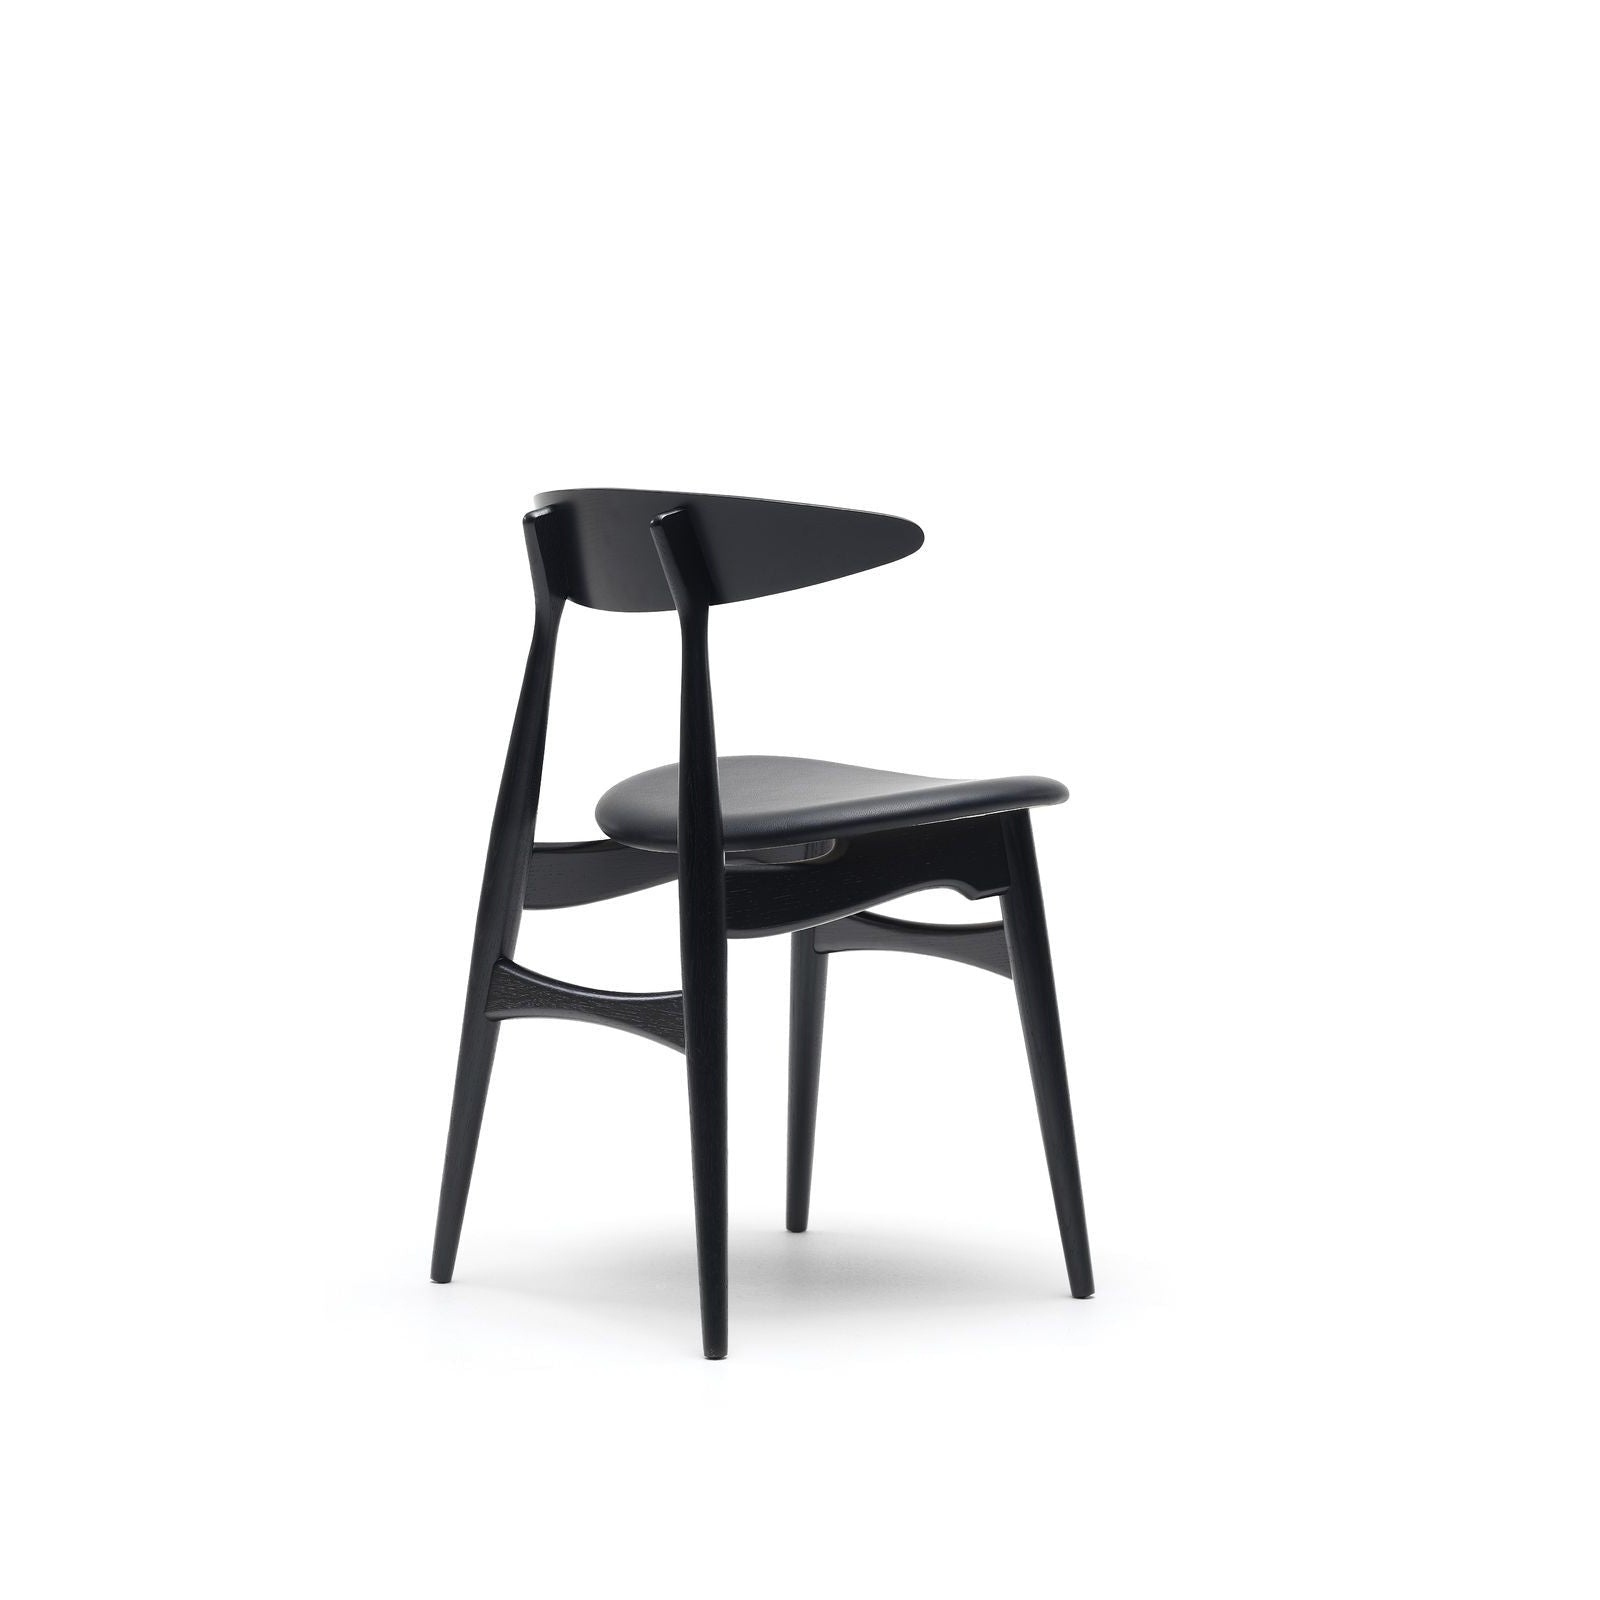 Carl Hansen CH33 P chaise, chêne noir / cuir noir